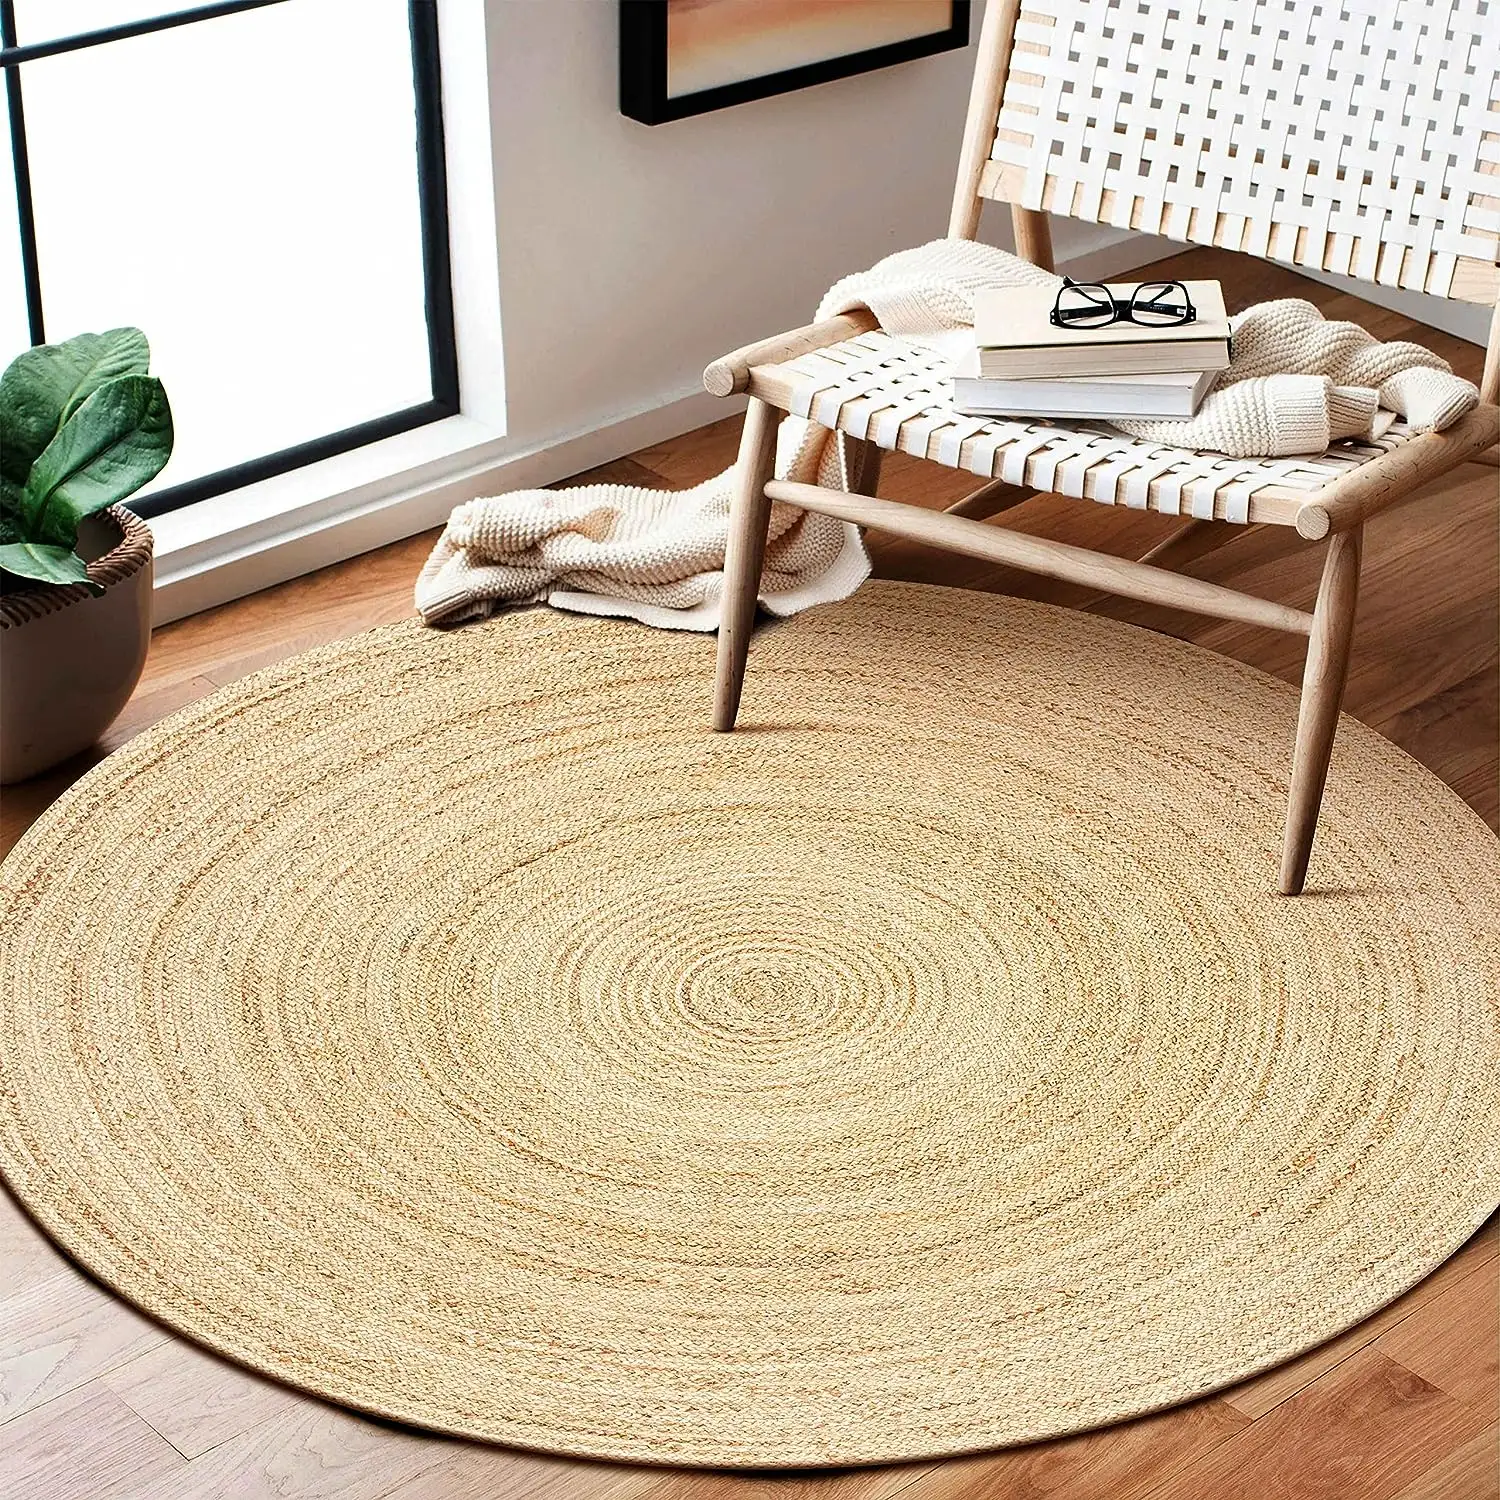 Rústico Vintage Beige trenzado Reversible tejido a mano alfombra de yute 4 pies redondo dormitorio sala de estar sofá mesa de centro alfombra